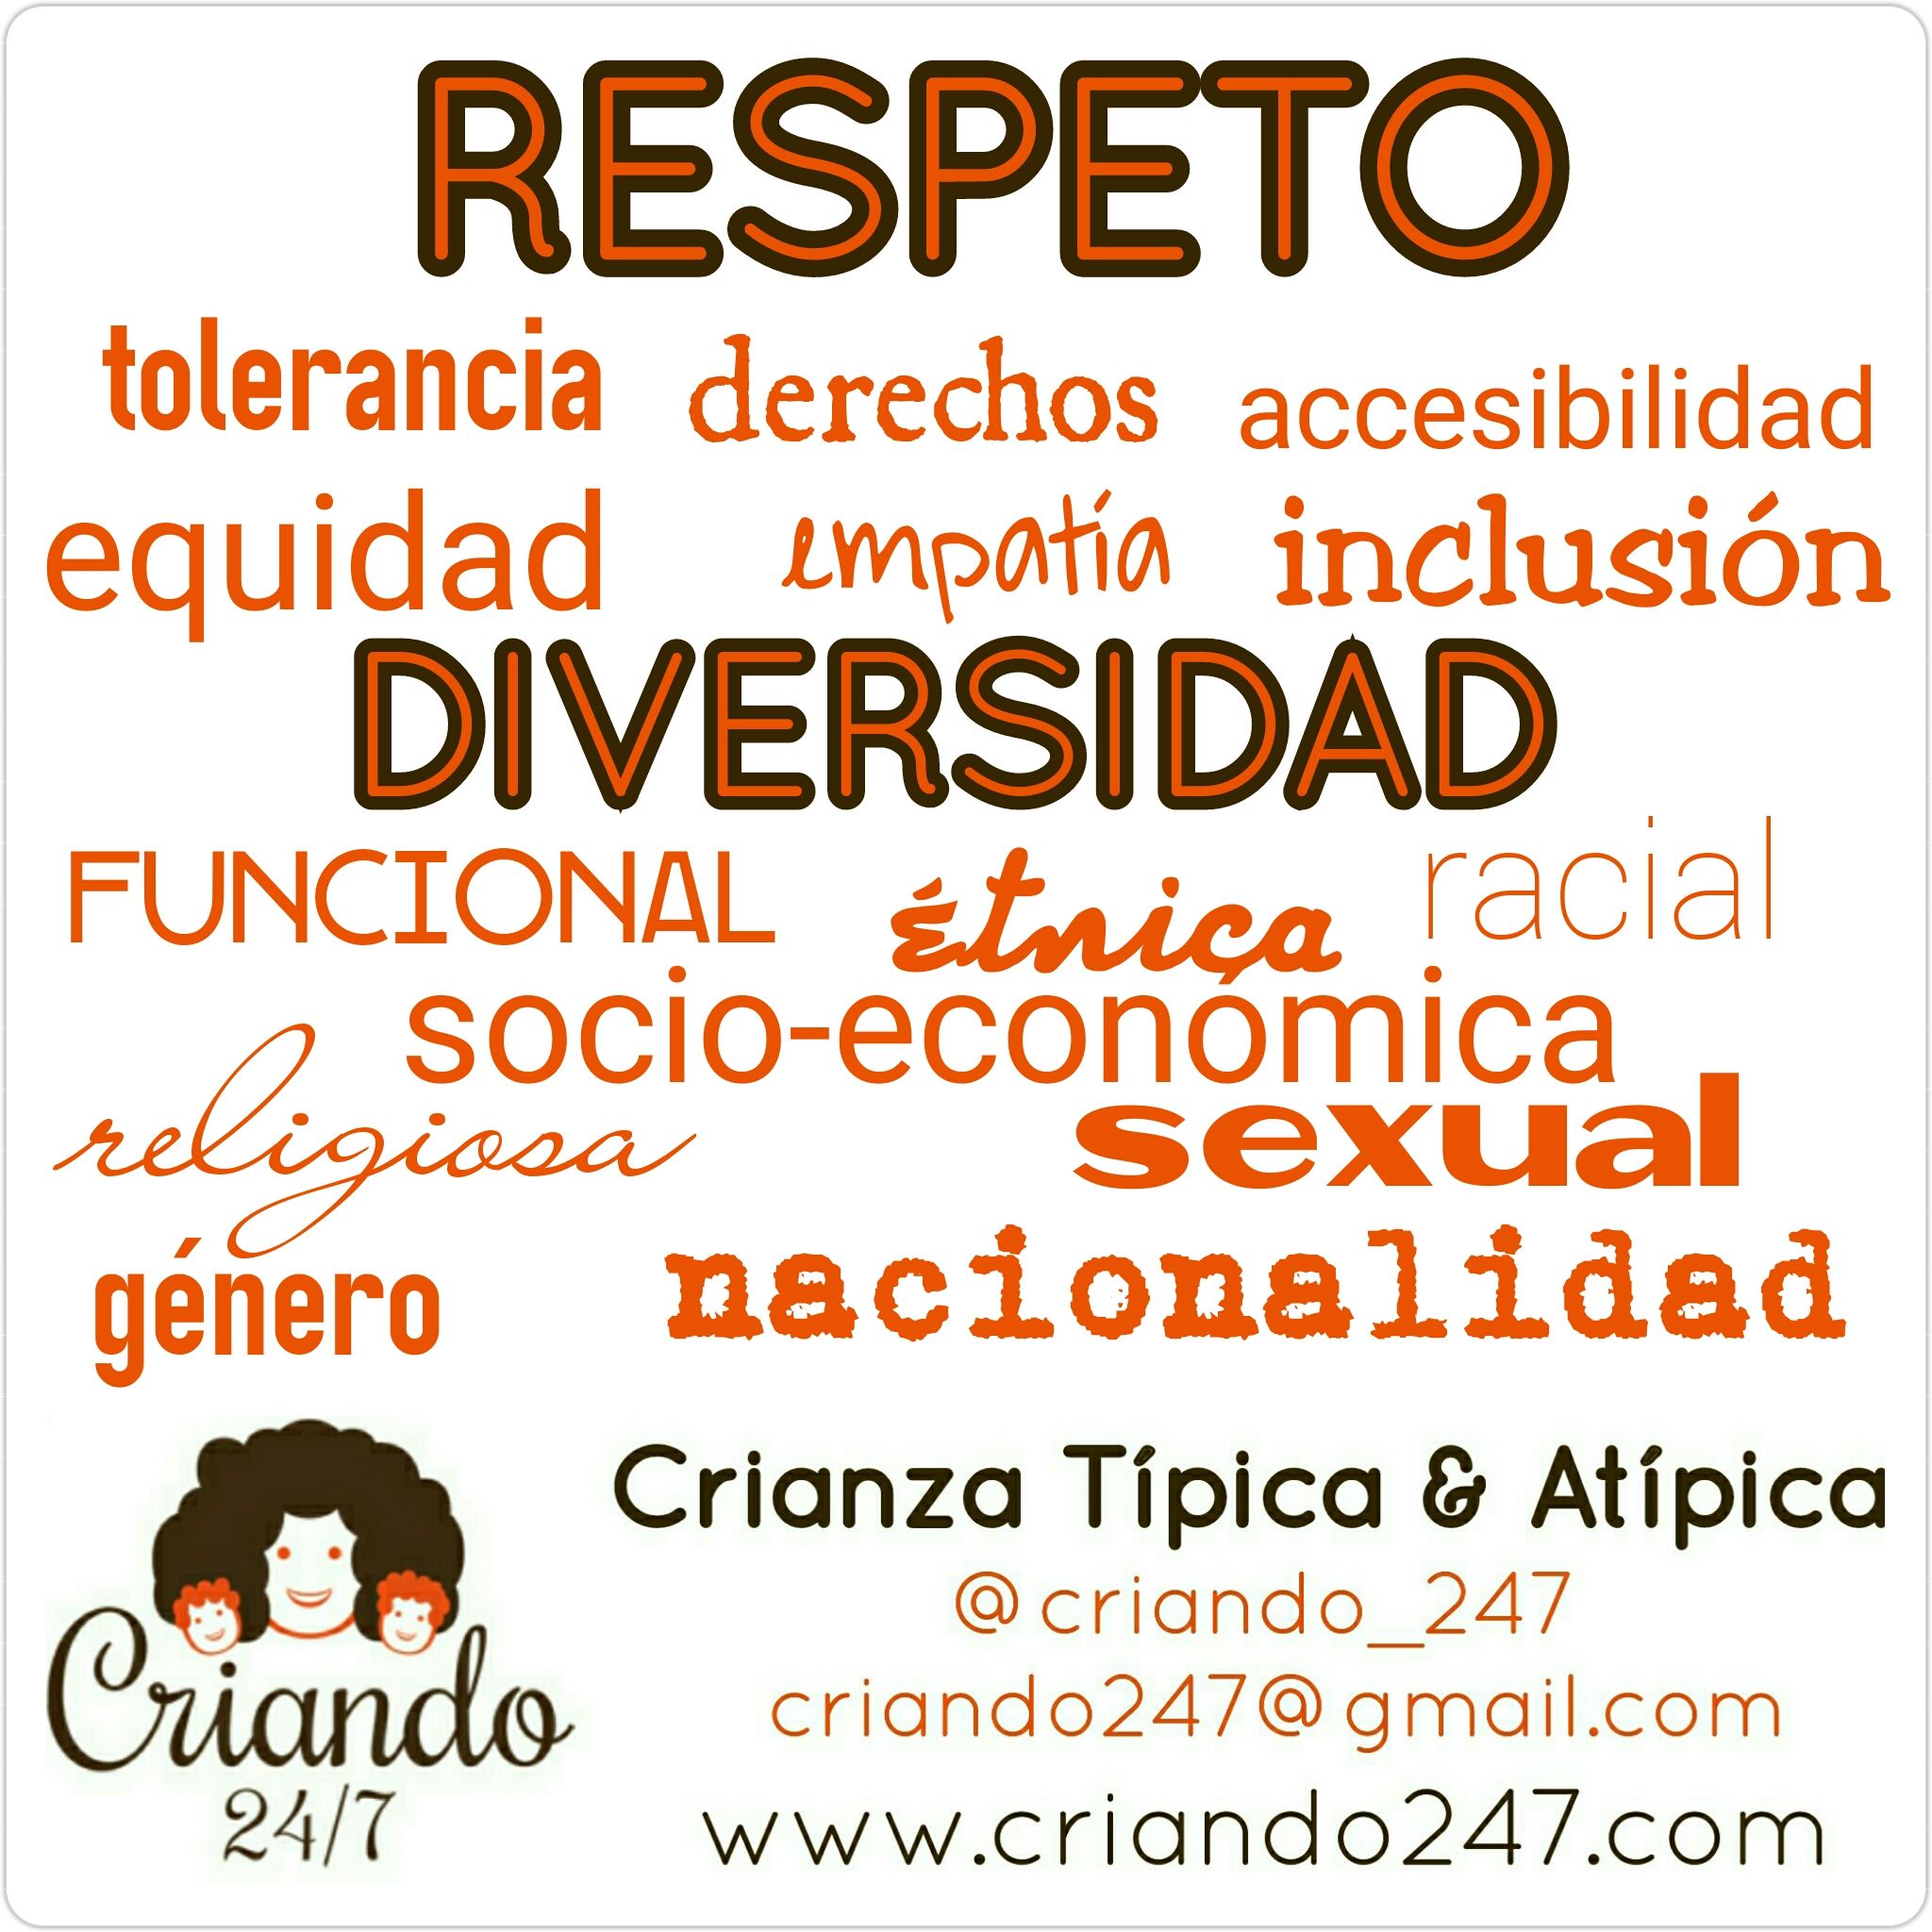 Respeto a la diversidad funcional, éetnica, racial, socio económica, religiosa, sexual de género, nacionalidad. tolerancia, derechos, accesibilidad, equidad, empatía,